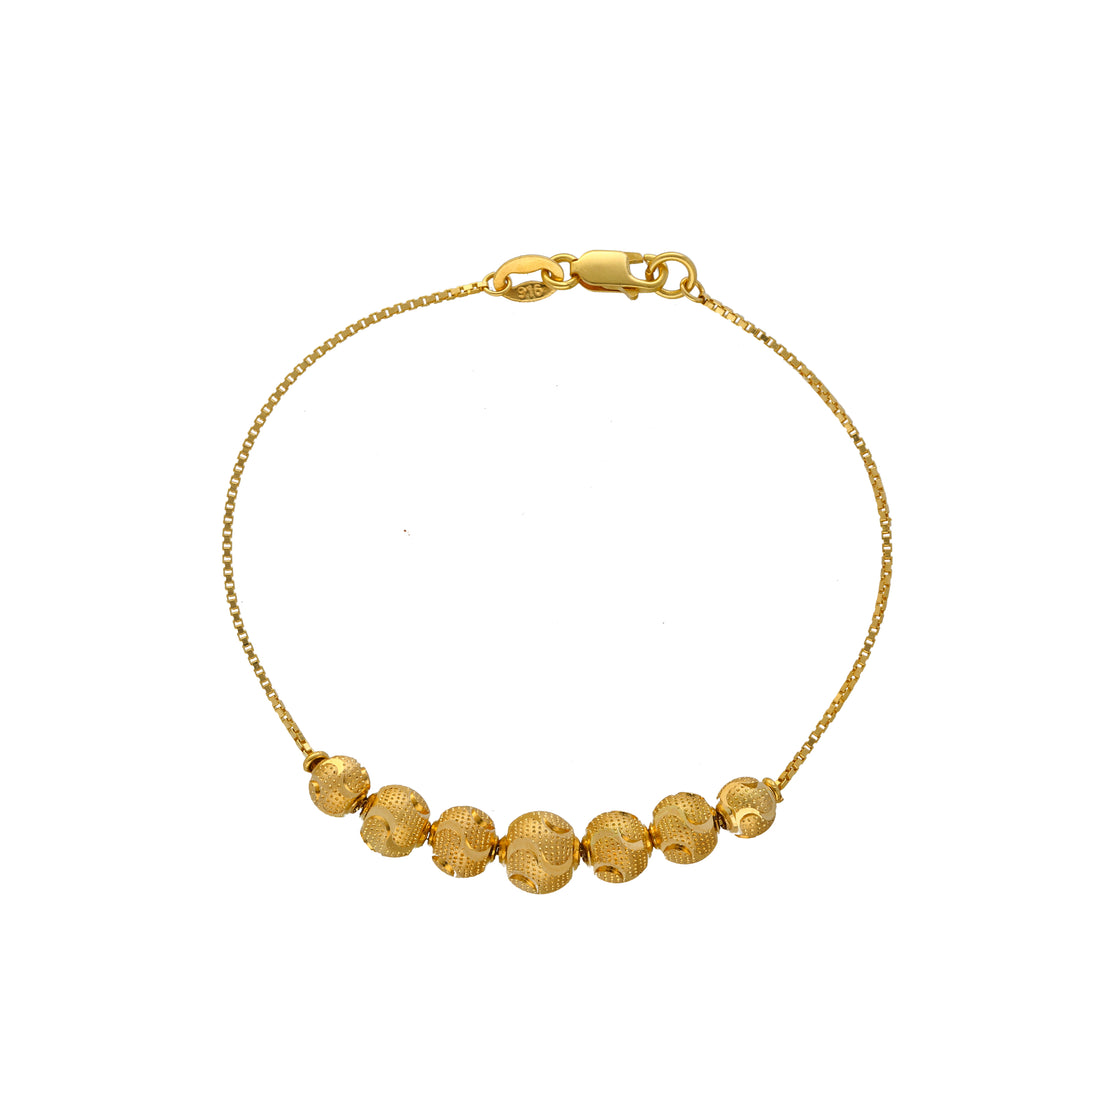 Showroom of Beads ladies bracelet 22k gold